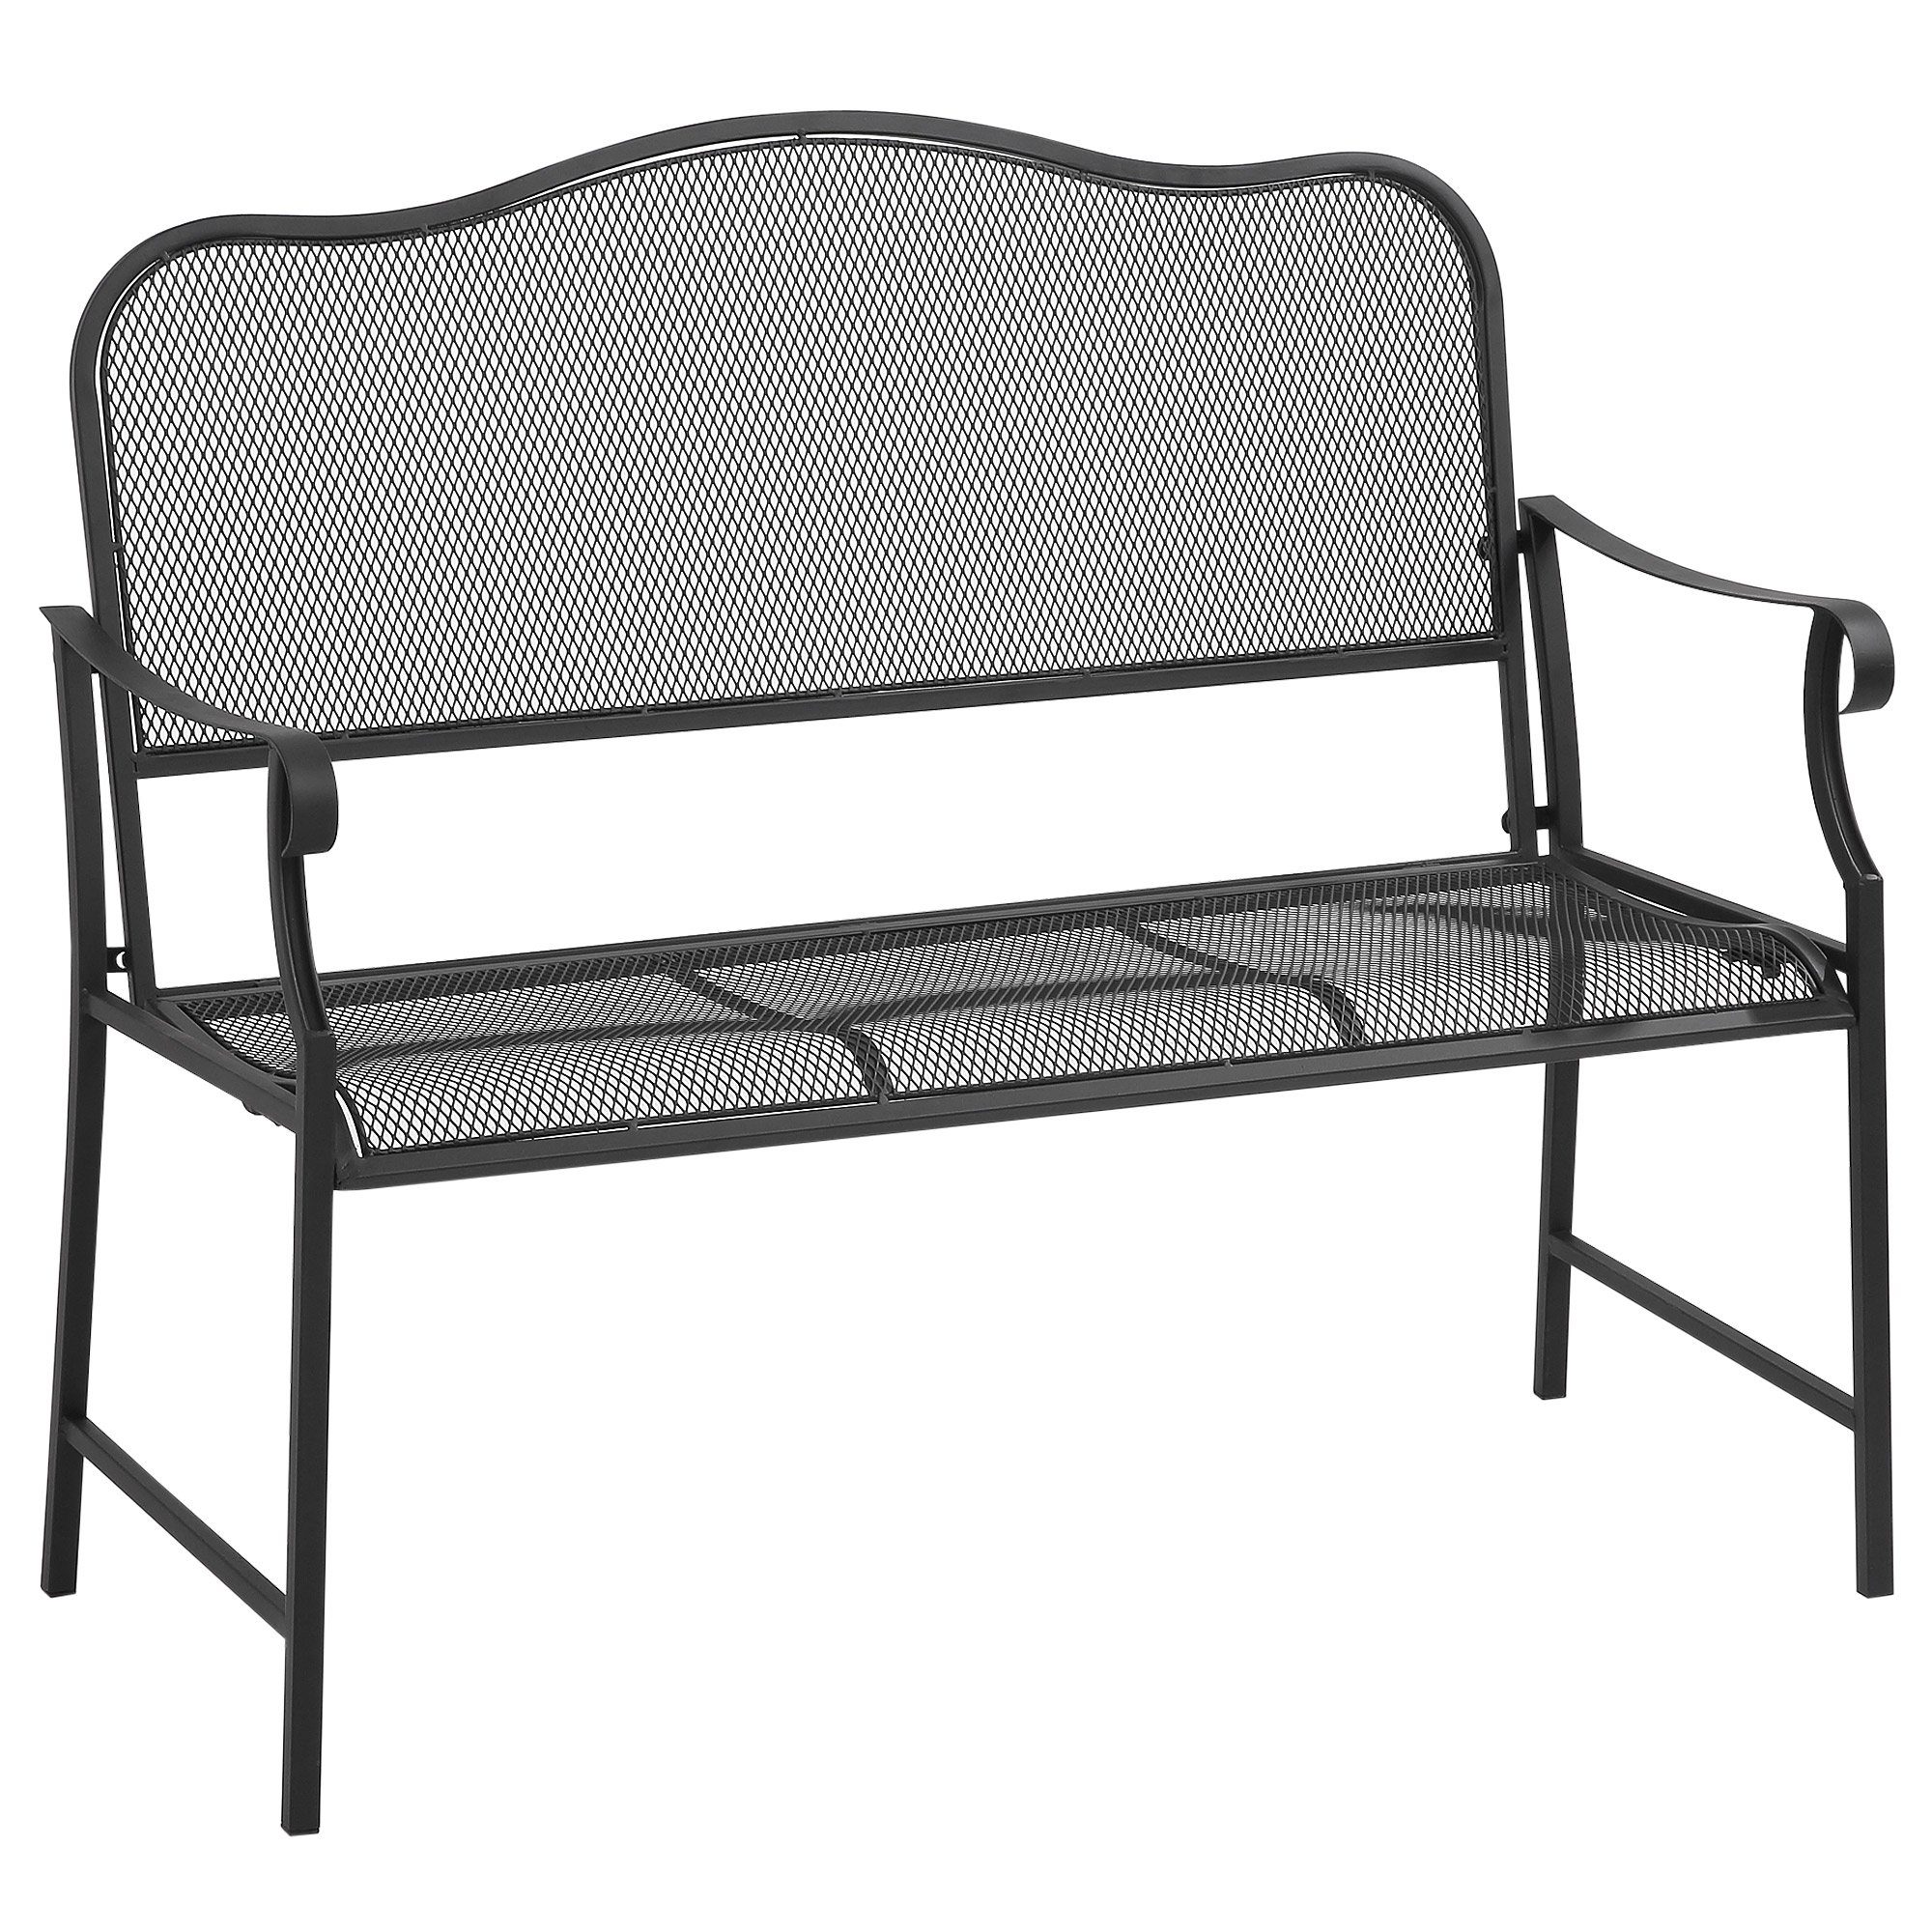 Outsunny Gartenbank Metall, 2-Sitzer, wetterbeständig, schwarz, 110,5 cm x 58 cm x 98 cm